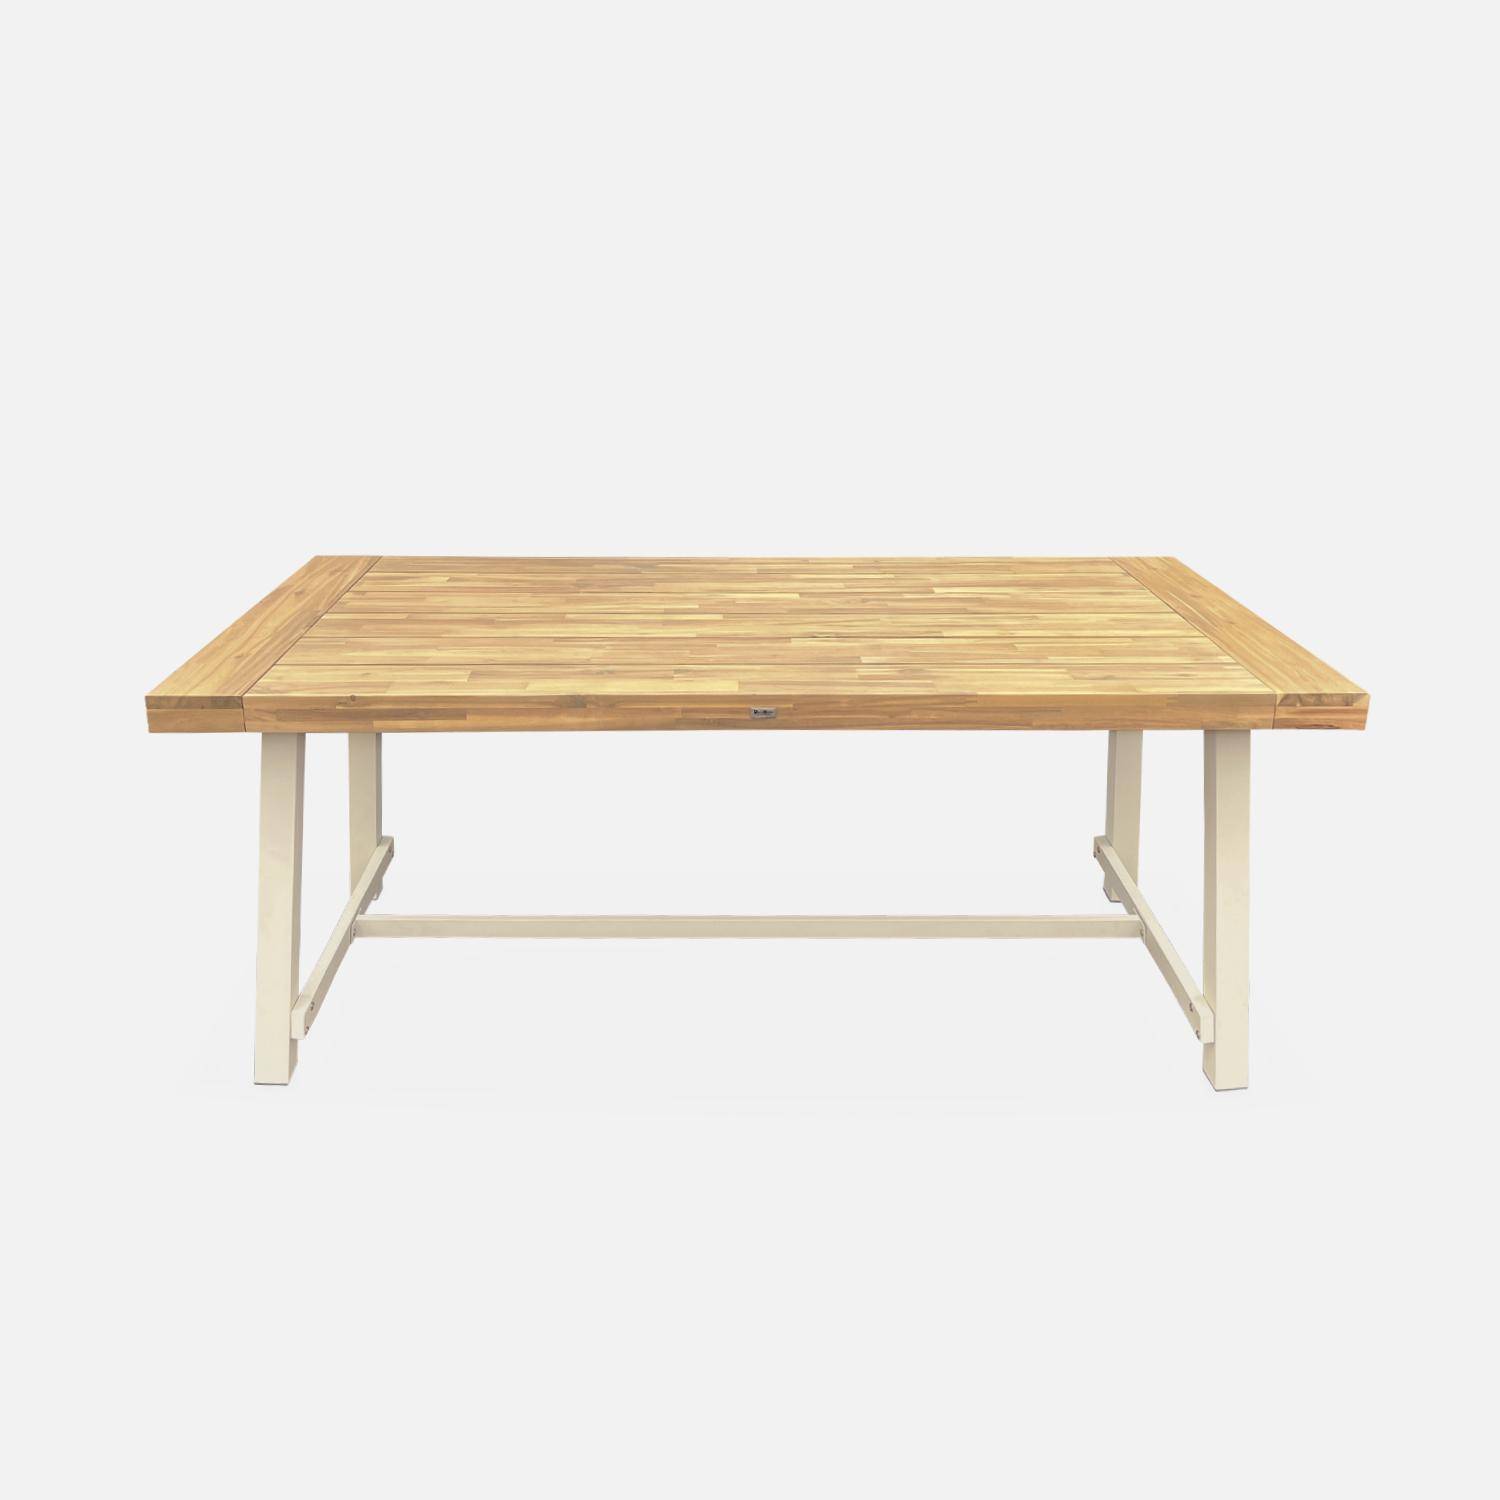 Table intérieur/extérieur en bois clair, effet teck et acier galvanisé ivoire, Fortaleza L190 x P91.5 x H76cm 6-8 places Photo4